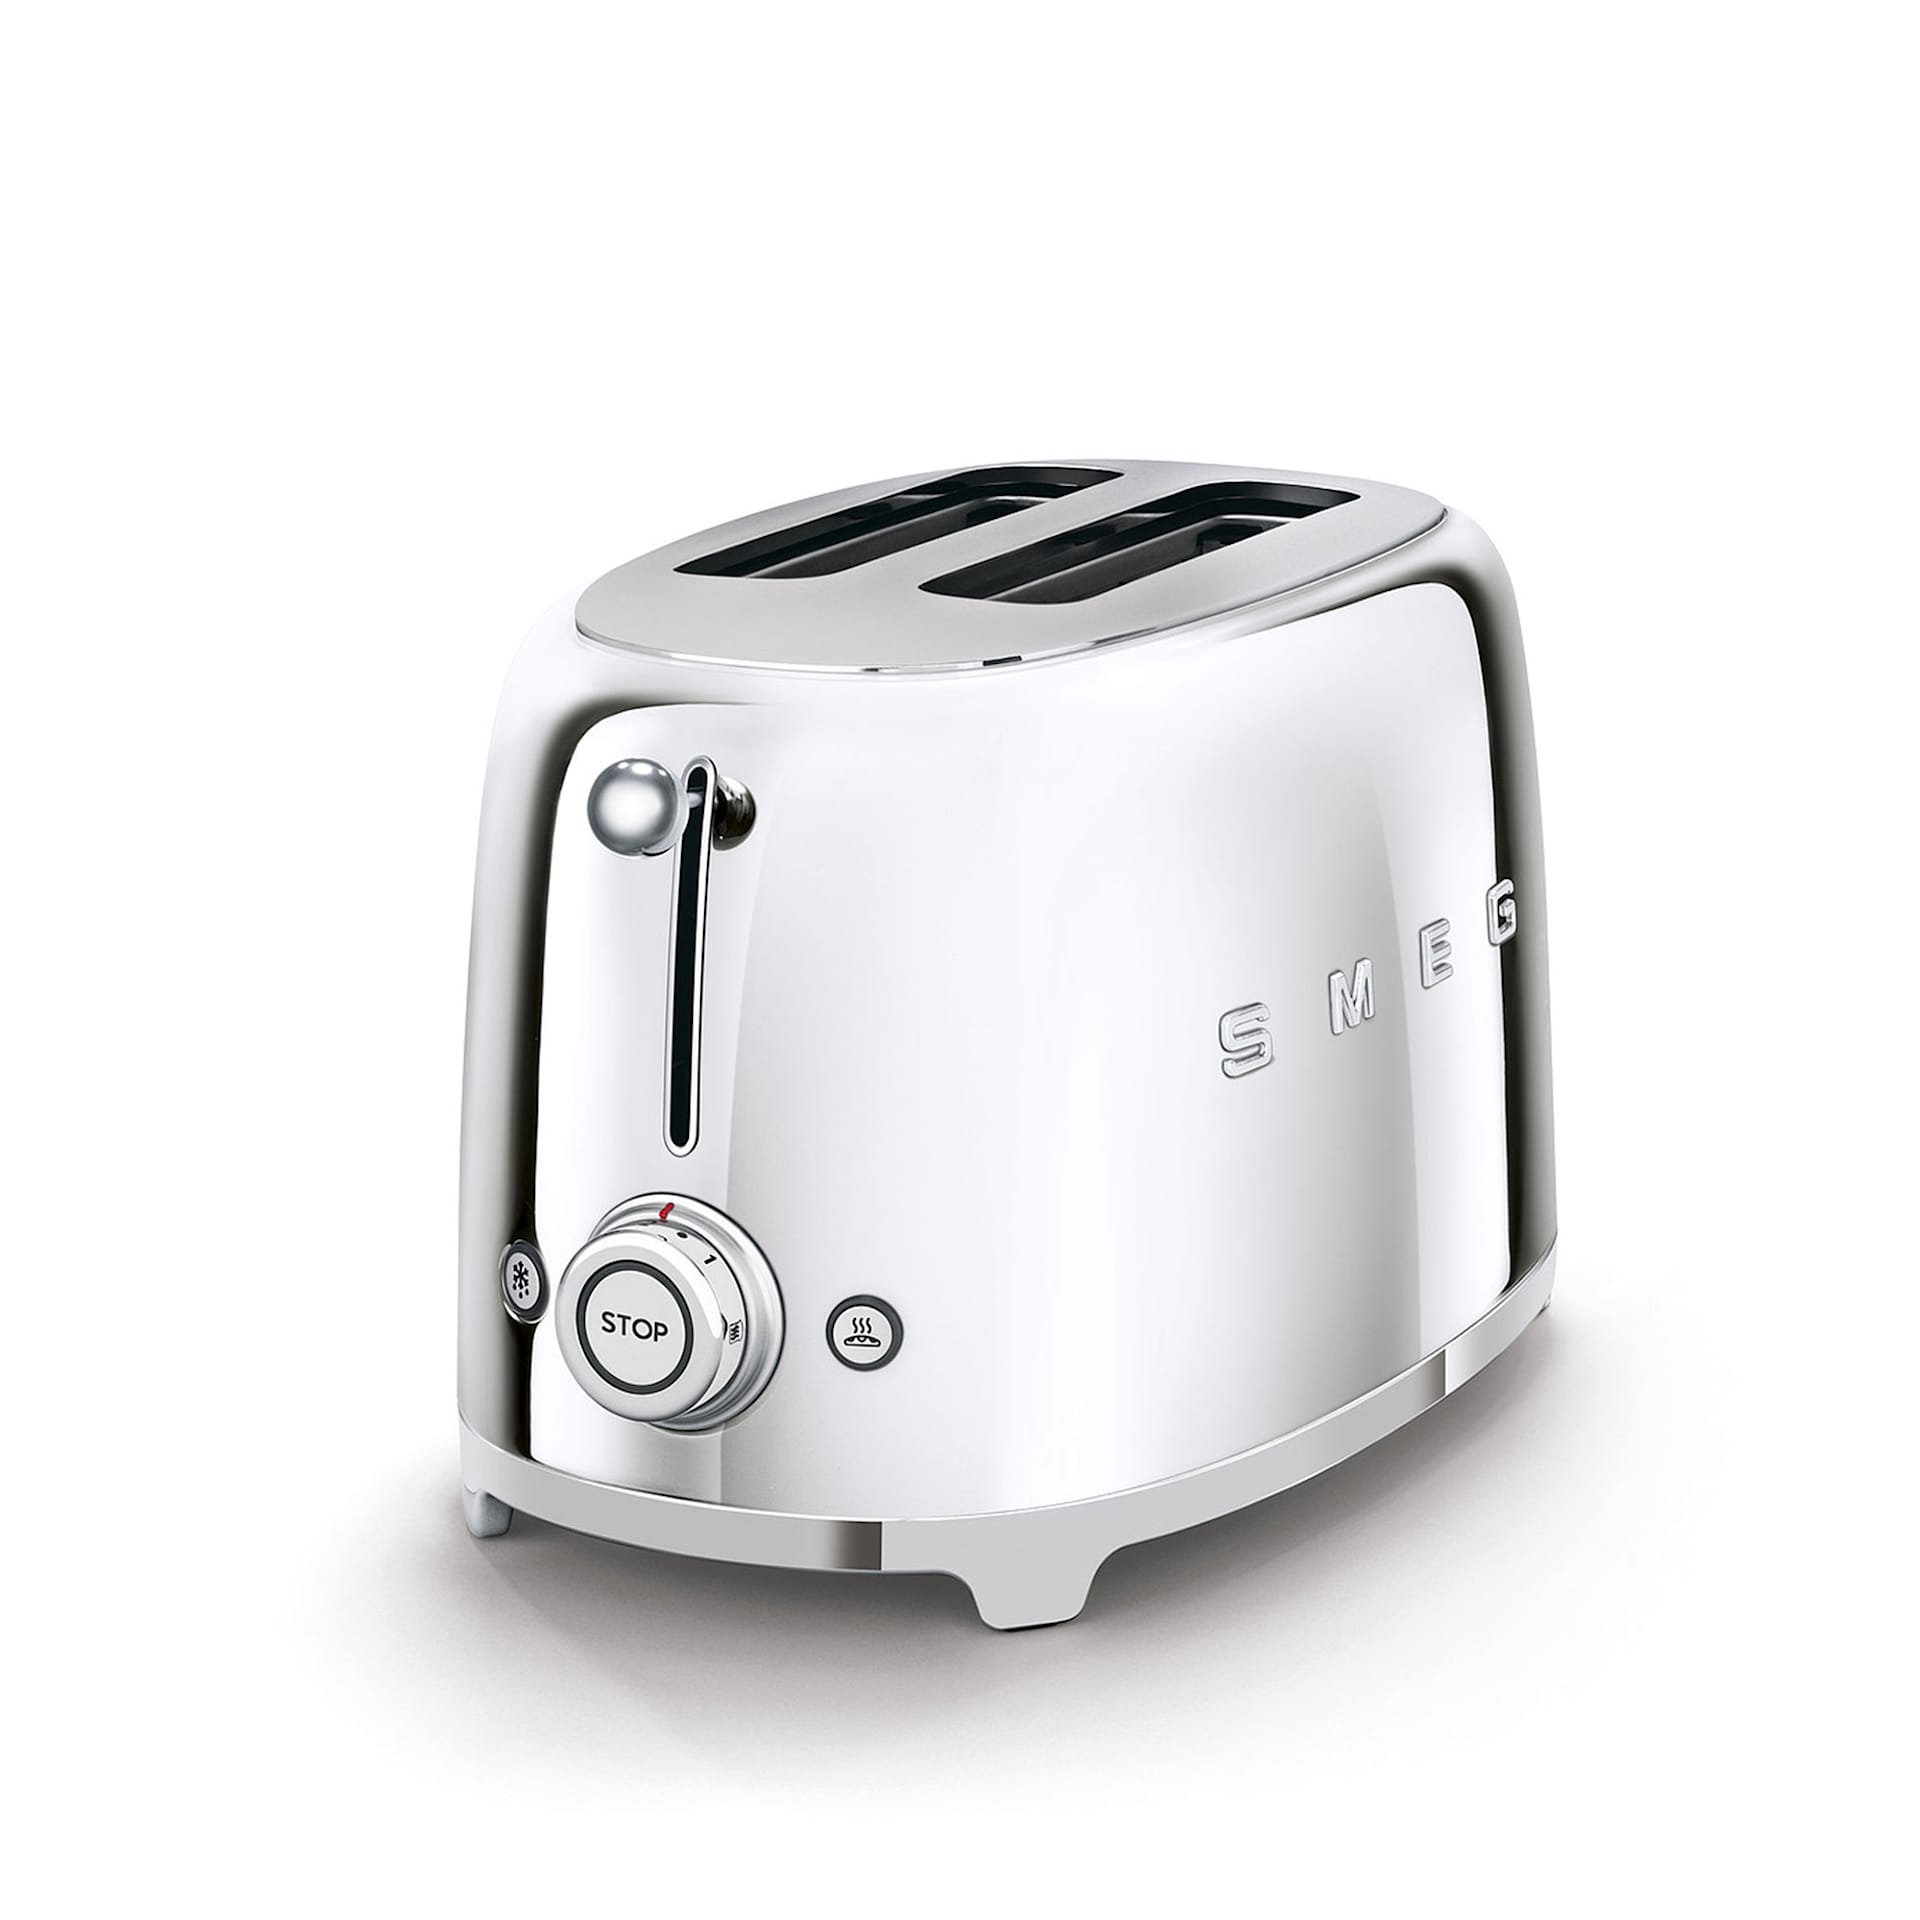 Smeg Toaster 2 Slices Chrome - Smeg - NO GA